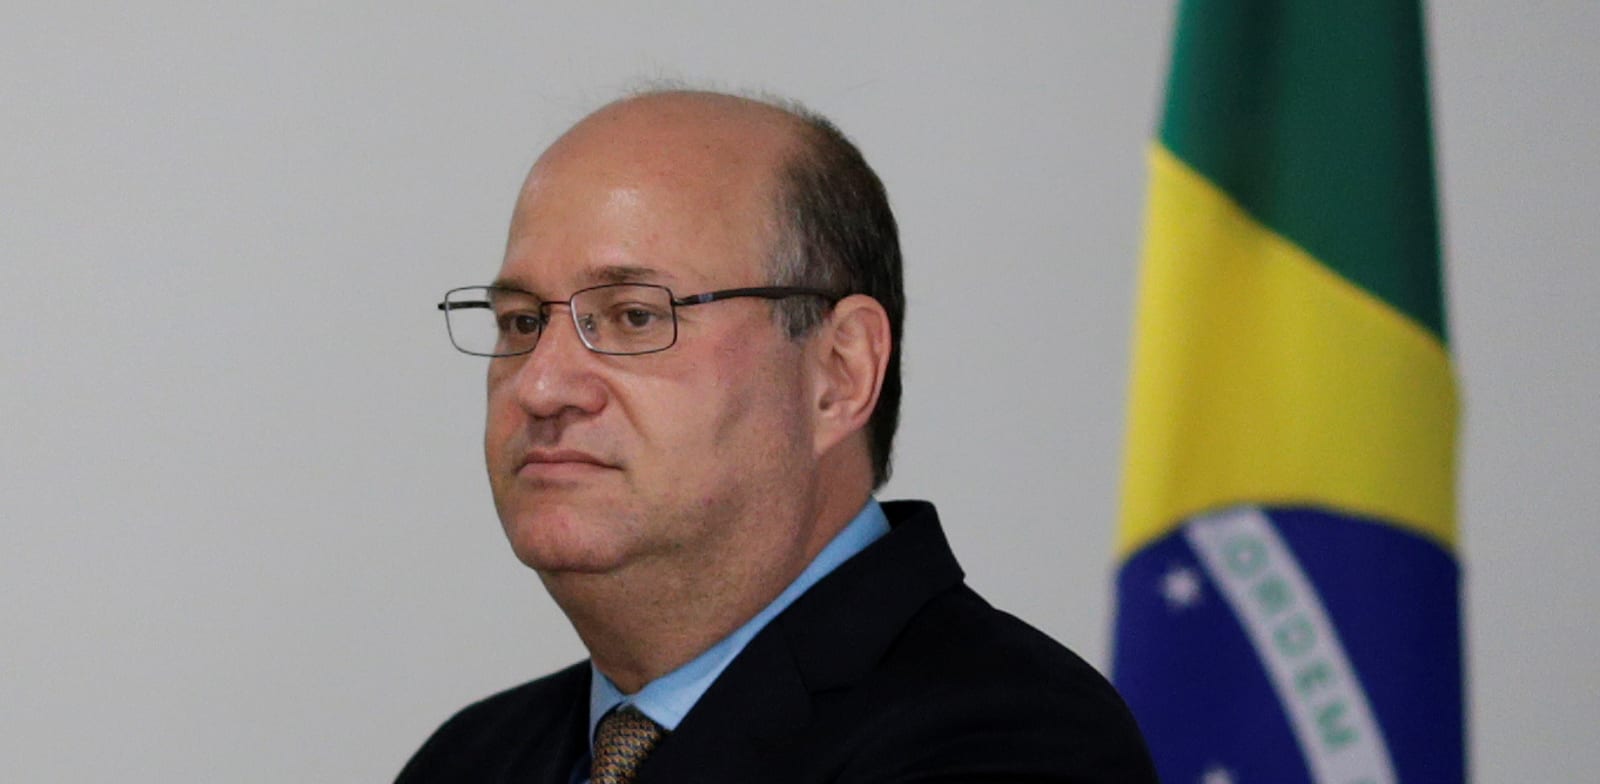 אילן גולדפיין, נשיא הבנק הבין-אמריקאי לפיתוח / צילום: Reuters, Ueslei Marcelino